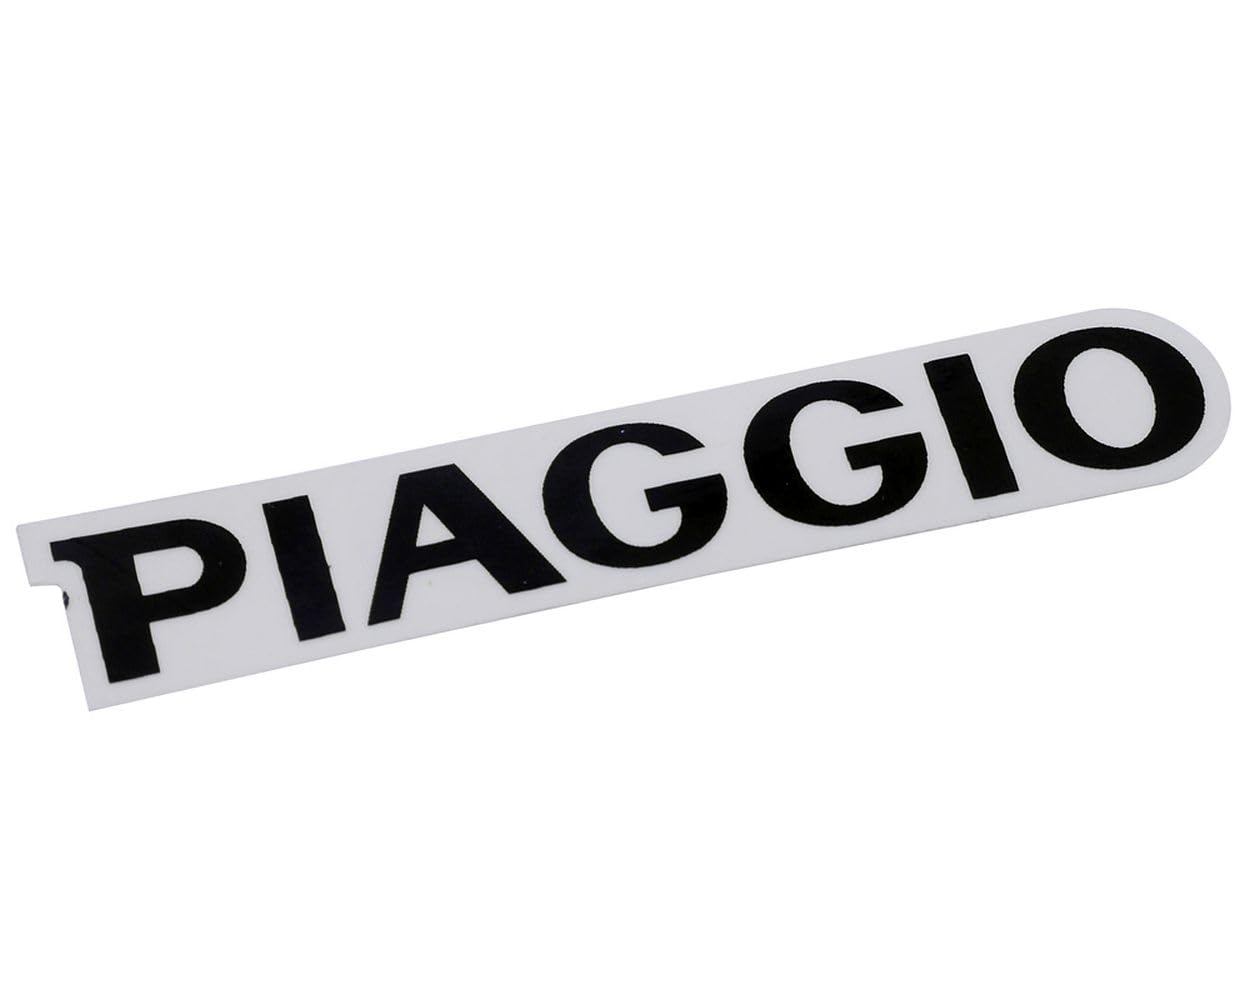 2EXTREME Schriftzug Aufkleber Sticker für Kaskade/Beinschild Piaggio schwarz 78x15mm von 2EXTREME